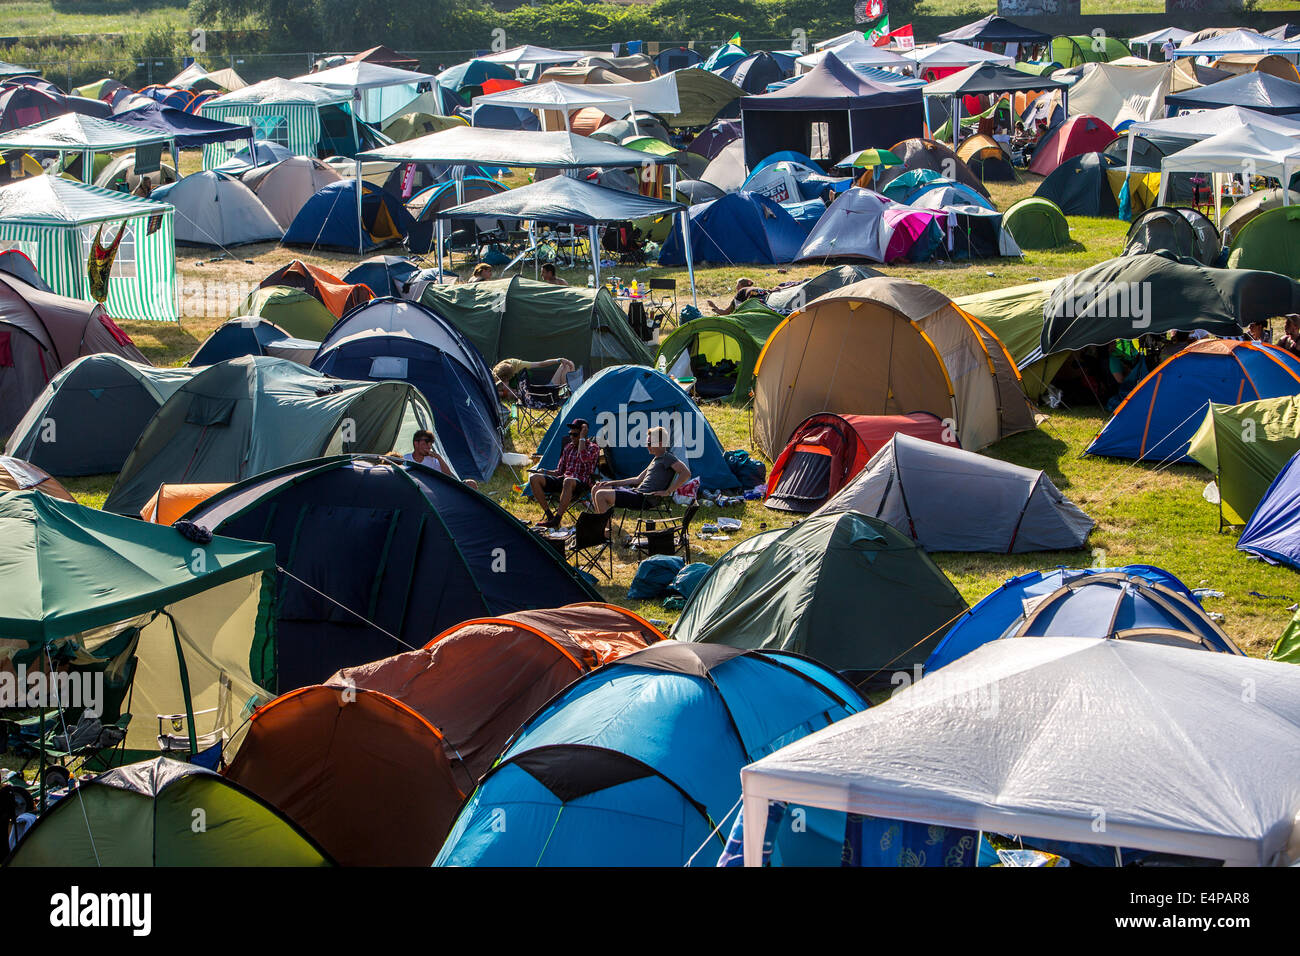 tent city, during an open air concert weekend, Muelheim, Germany Stock Photo